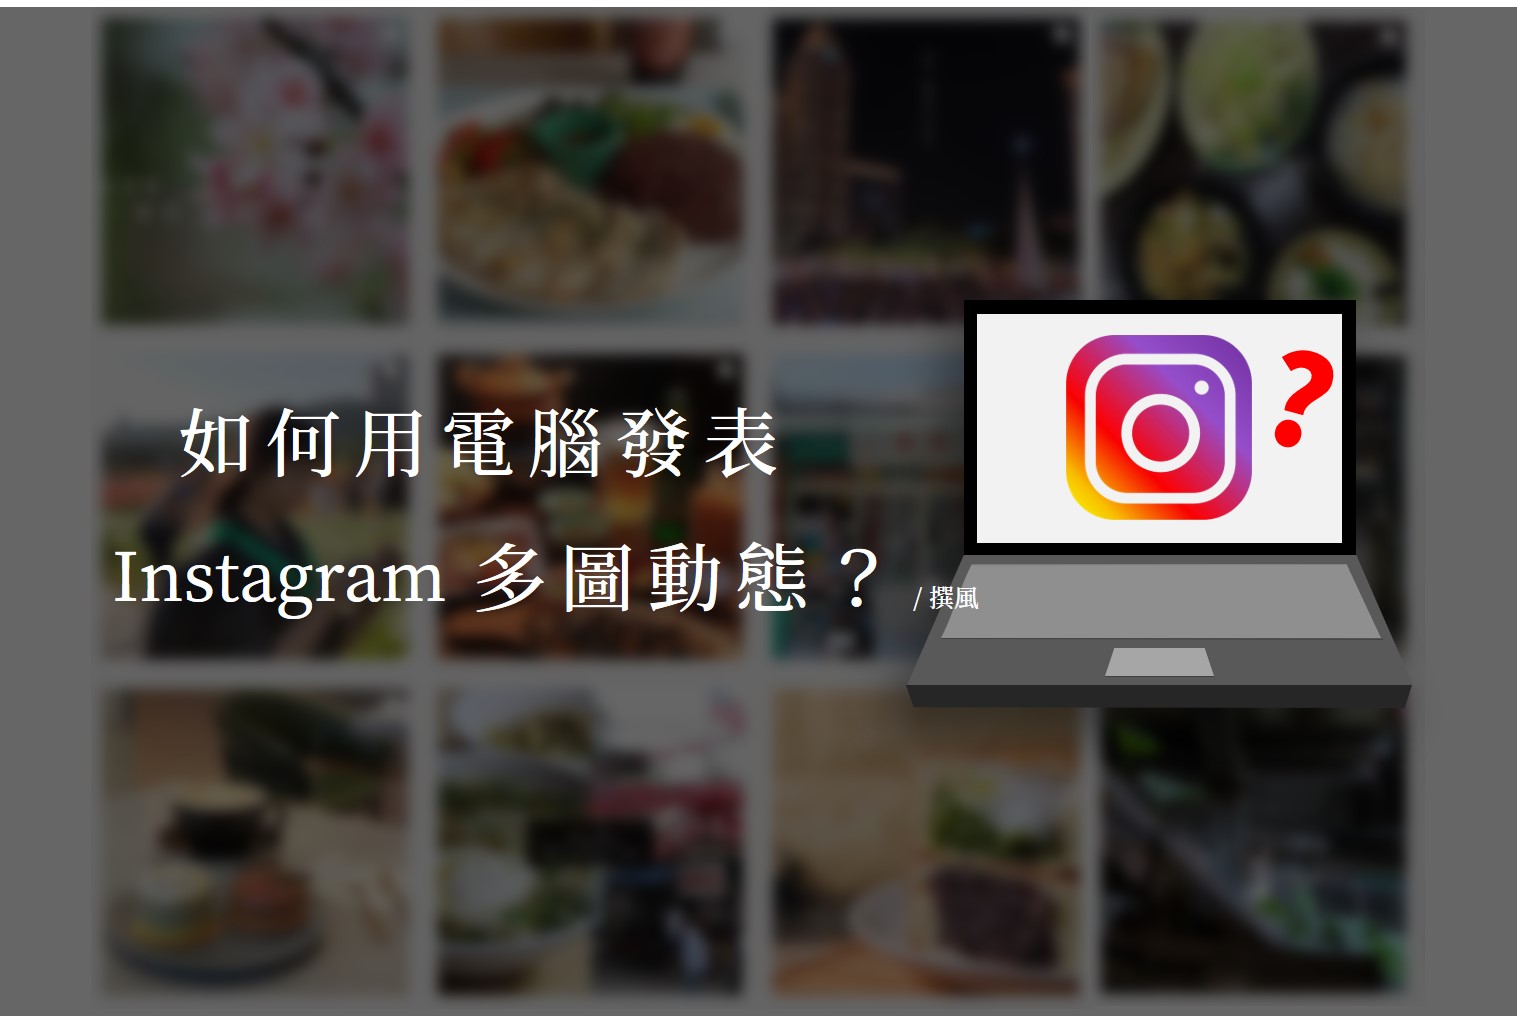 社群／如何用電腦發表Instagram多圖動態？線上創作者工作坊使用教學